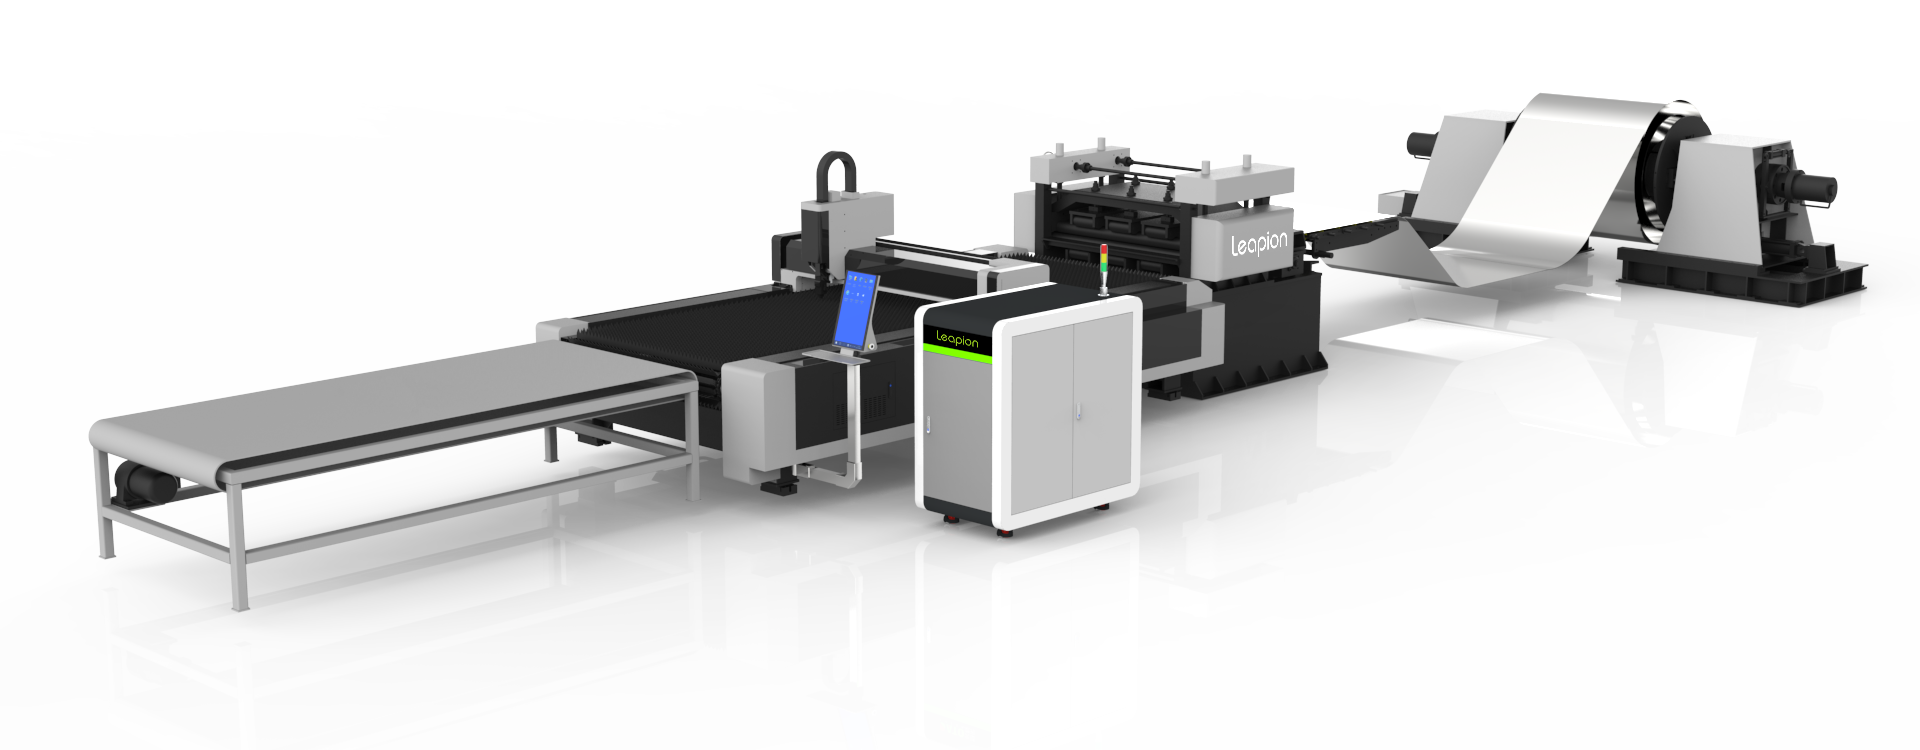 ¿Cuáles son las ventajas de la aplicación de IN Enviar Ligent máquina de corte láser de desenrollado y nivelación?